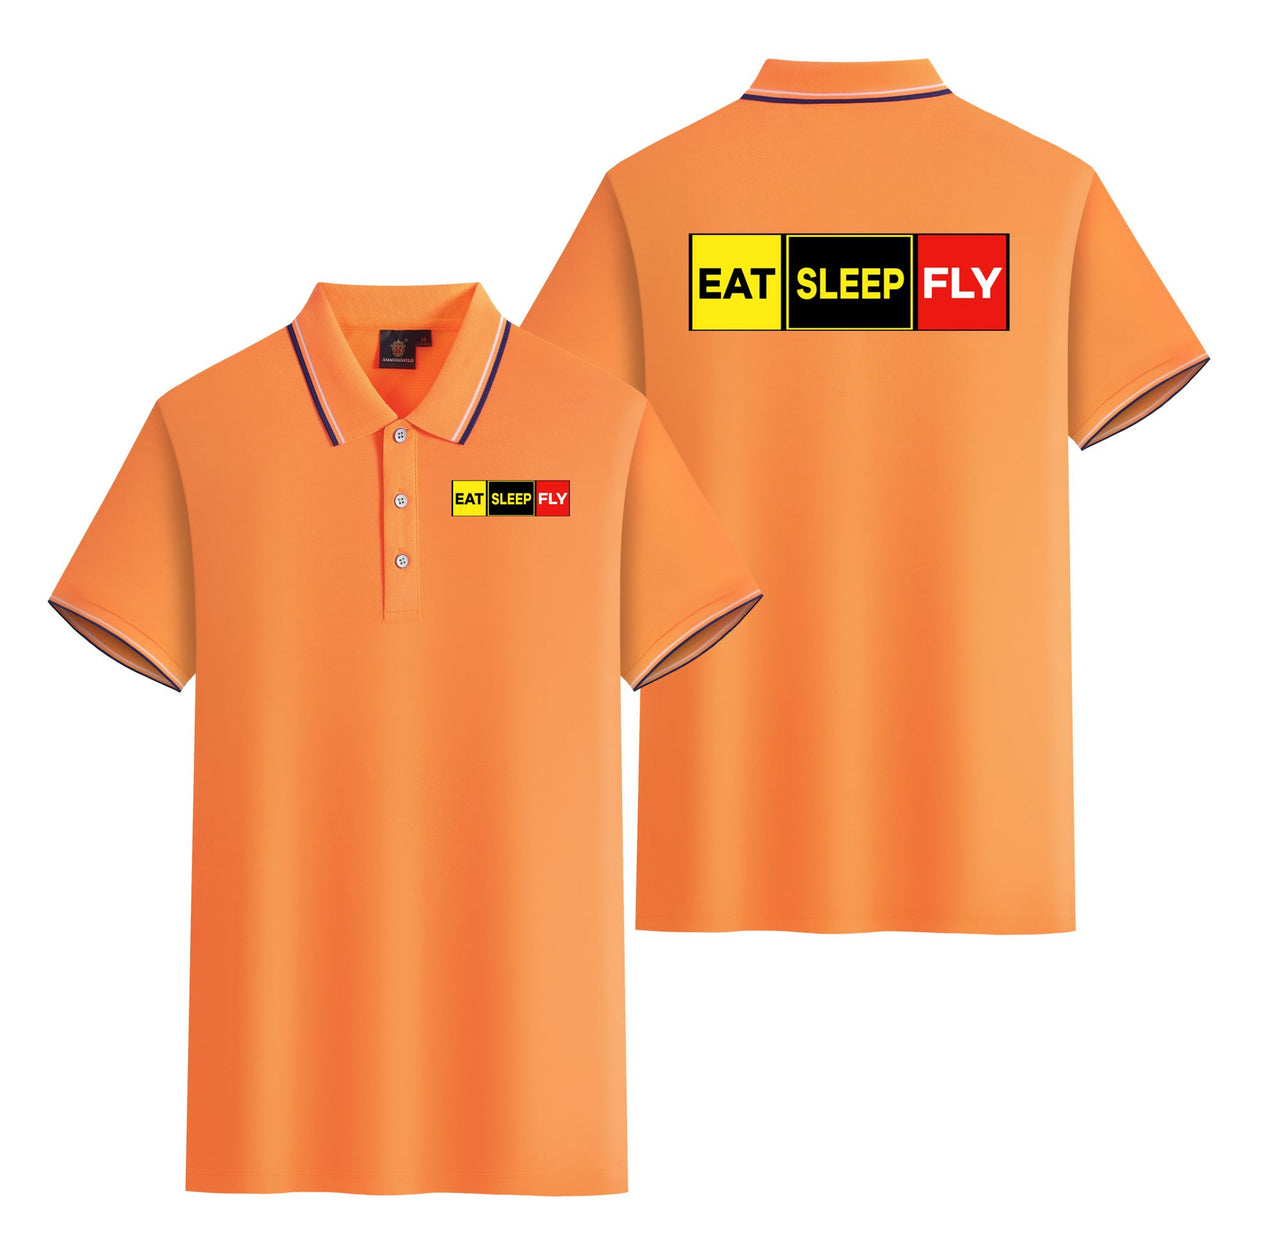 Eat Sleep Fly (Colourful) Designed Stylish Polo T-Shirts (Double-Side)